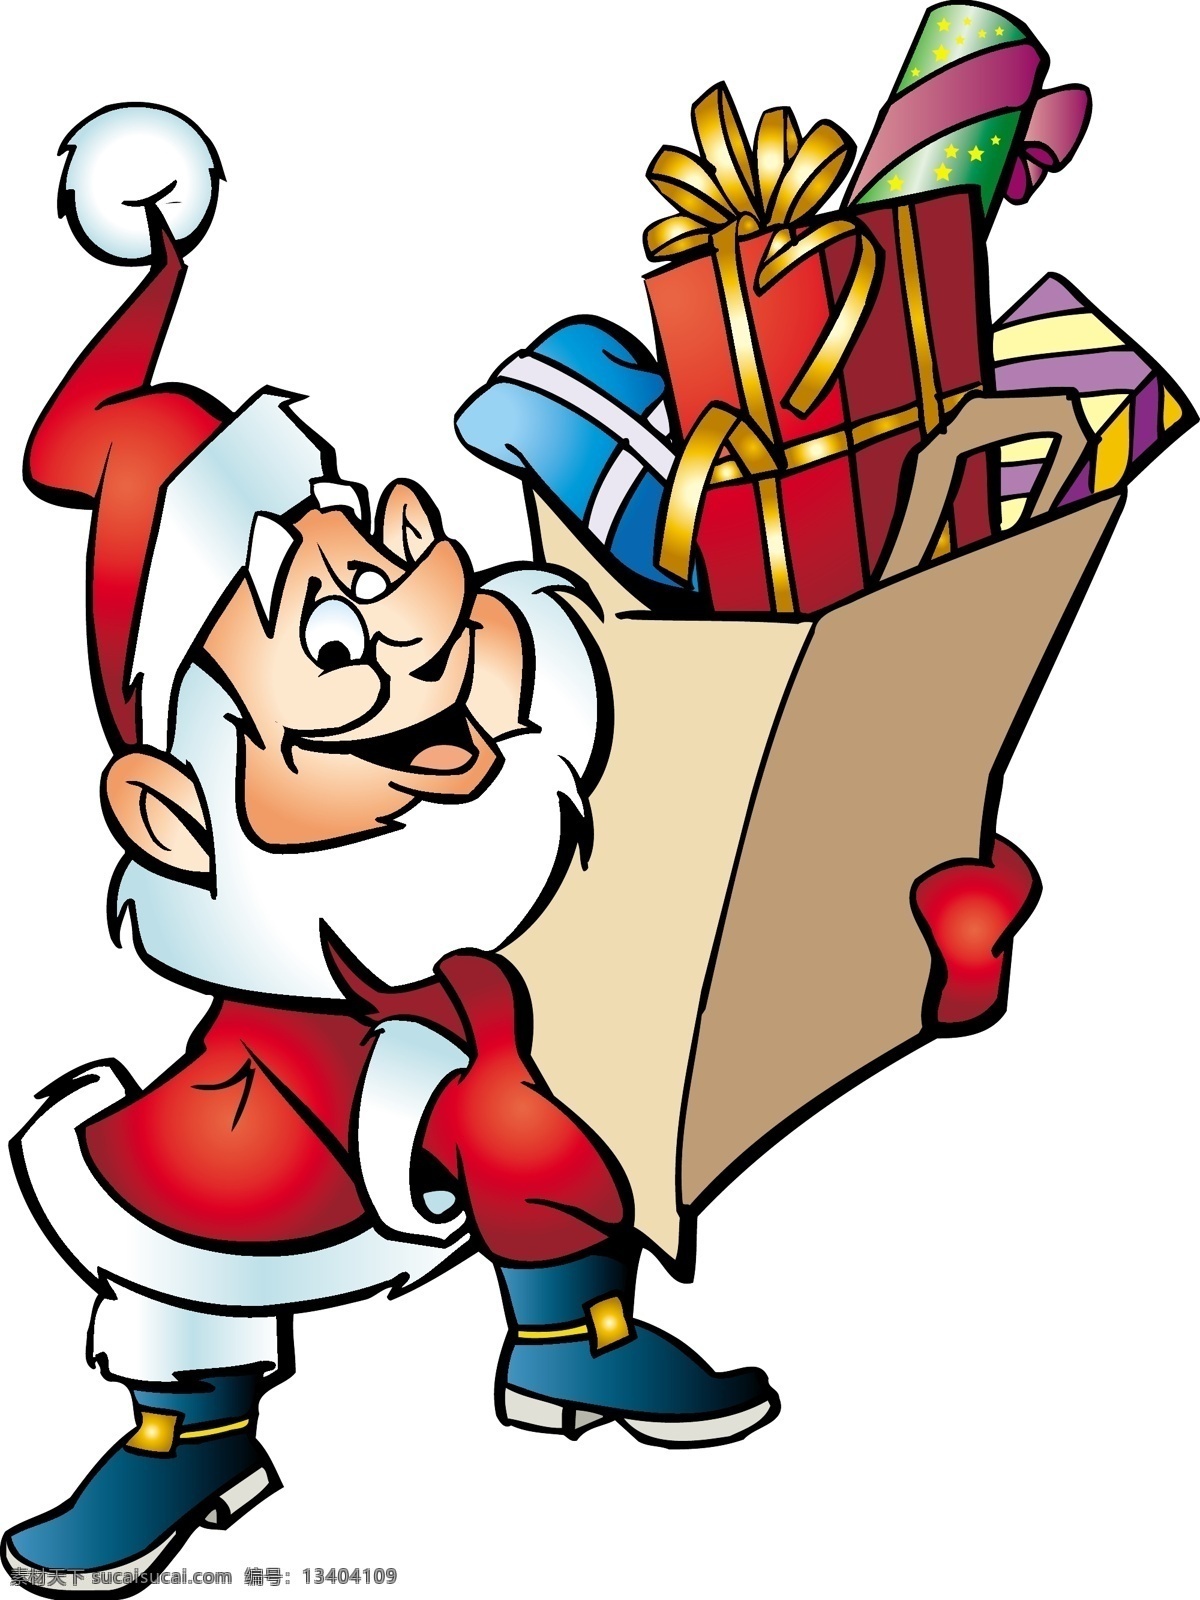 缤纷 圣诞节 系列 鸡腿 礼物 麋鹿 圣诞插画 圣诞老人 圣诞树 雪橇 烟囱 圣诞大餐 矢量